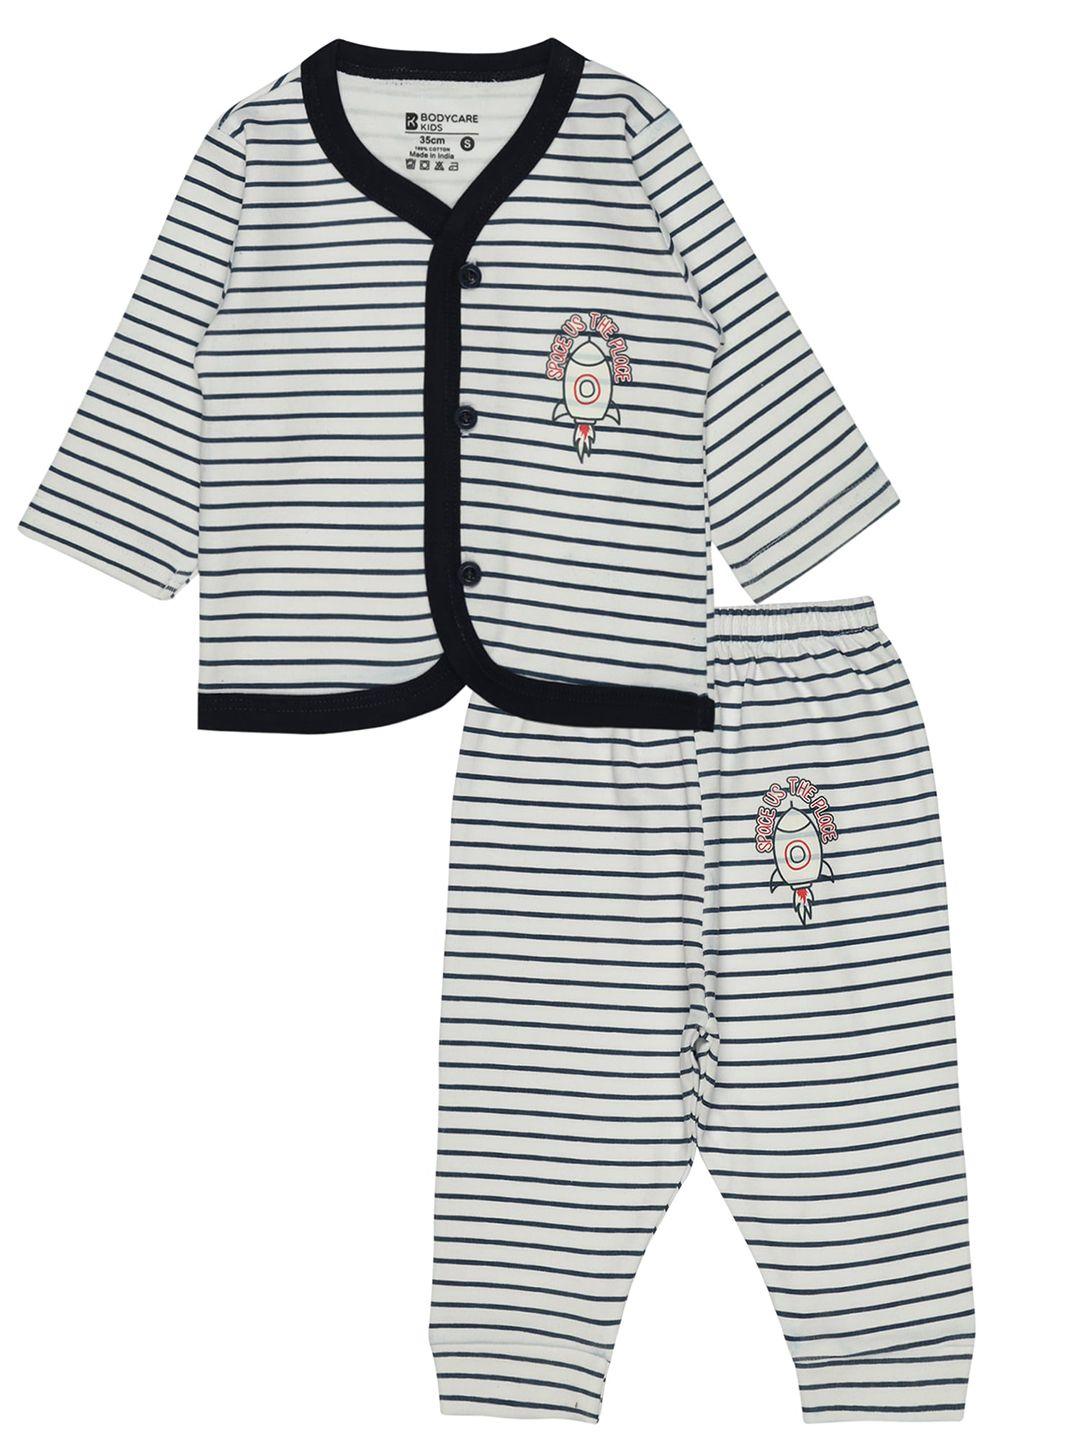 bodycare kids striped shirt with pyjamas